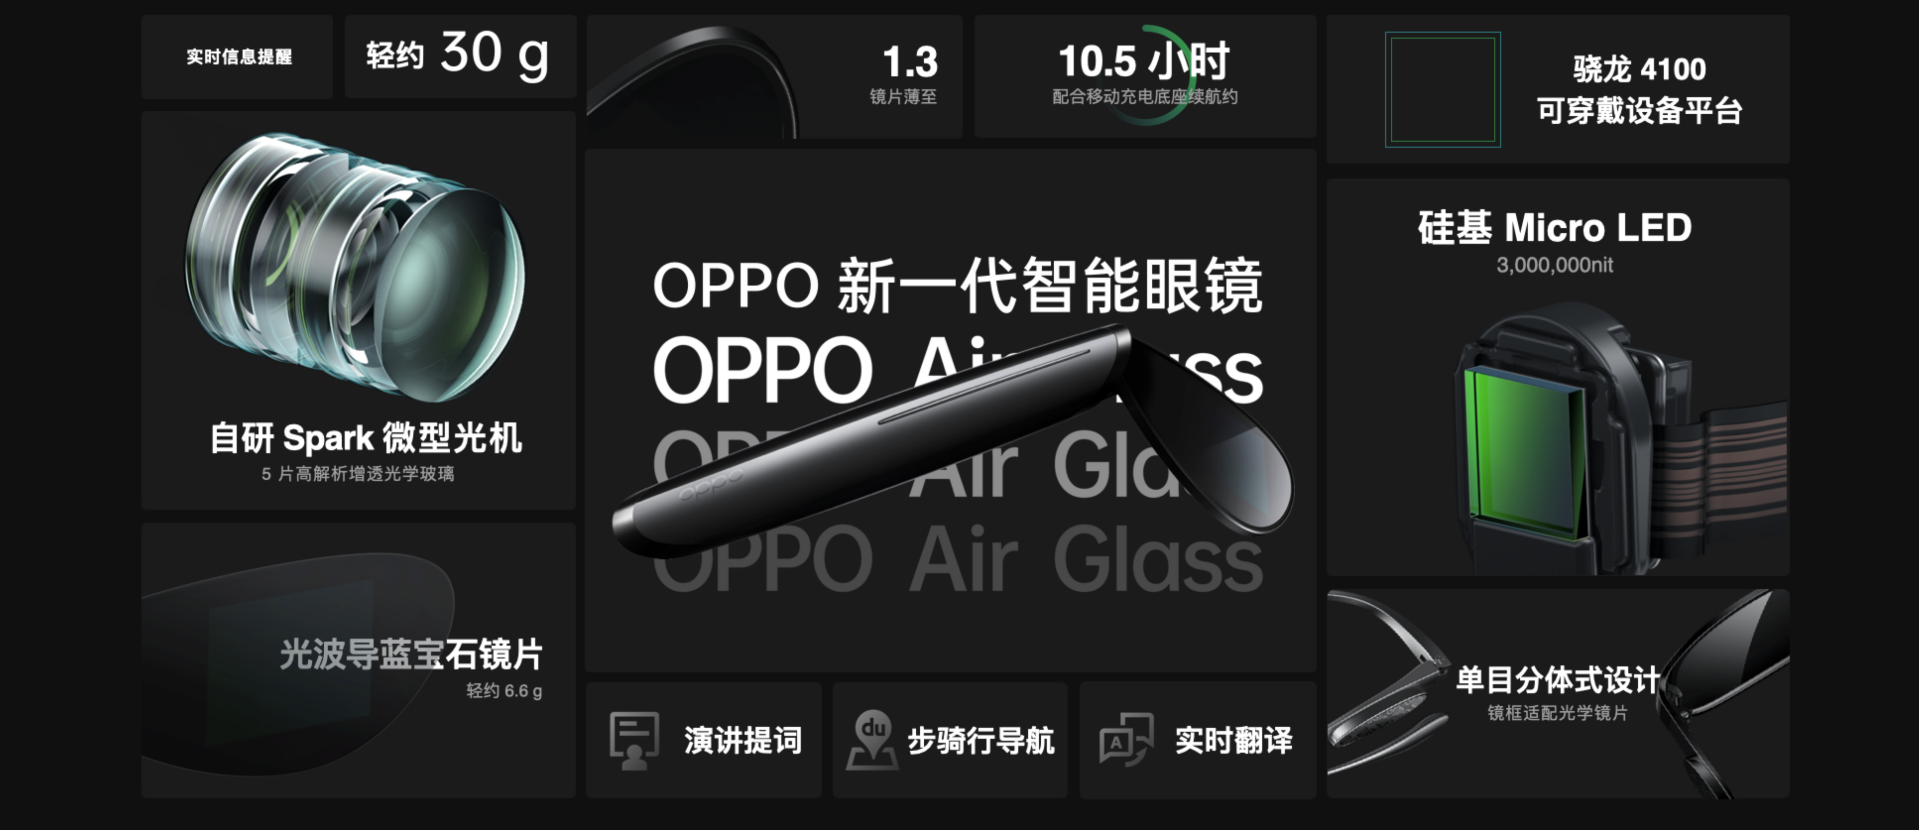 轻巧超乎想象 OPPO Air Glass智能眼镜正式发布